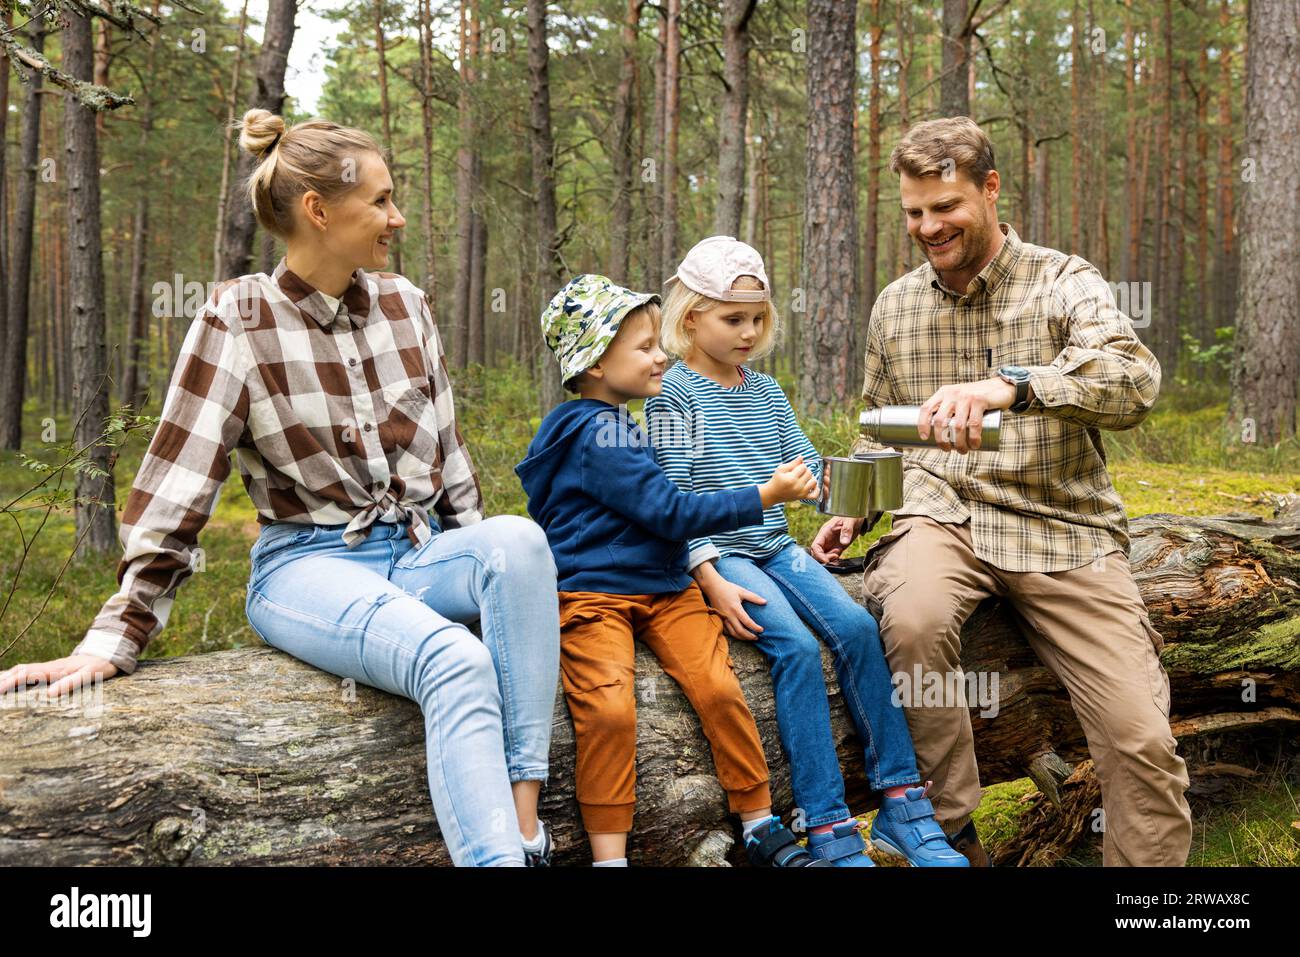 Familie mit Kindern, die nach einem Waldspaziergang auf umgestürzten Bäumen ein kleines Picknick machen. Tee aus Thermoskannen trinken. Aktivitäten im Freien Stockfoto